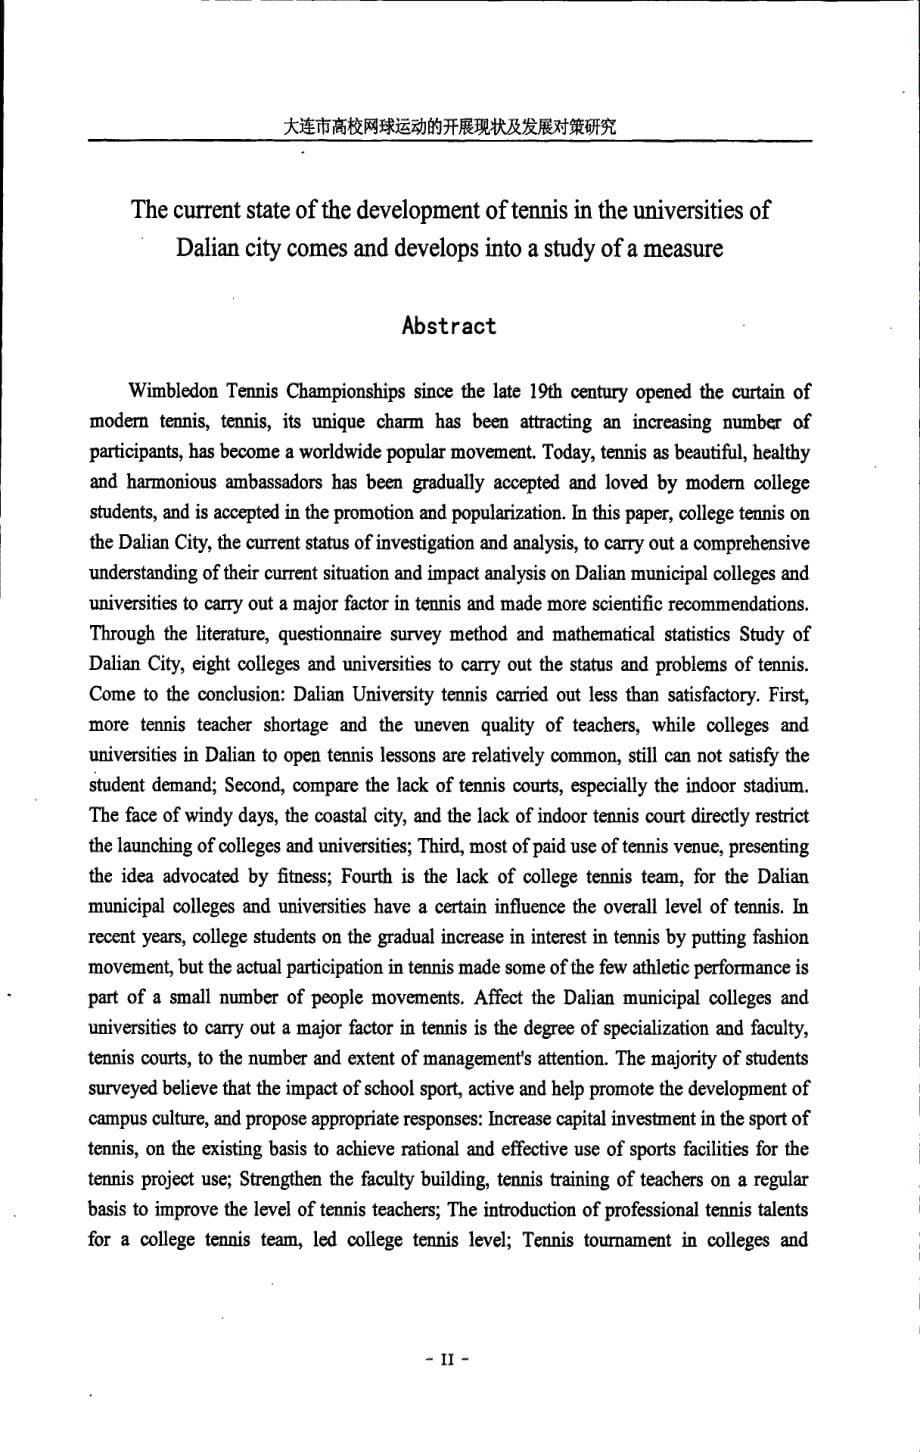 大连市高校网球运动的开展现状及发展对策研究_第5页